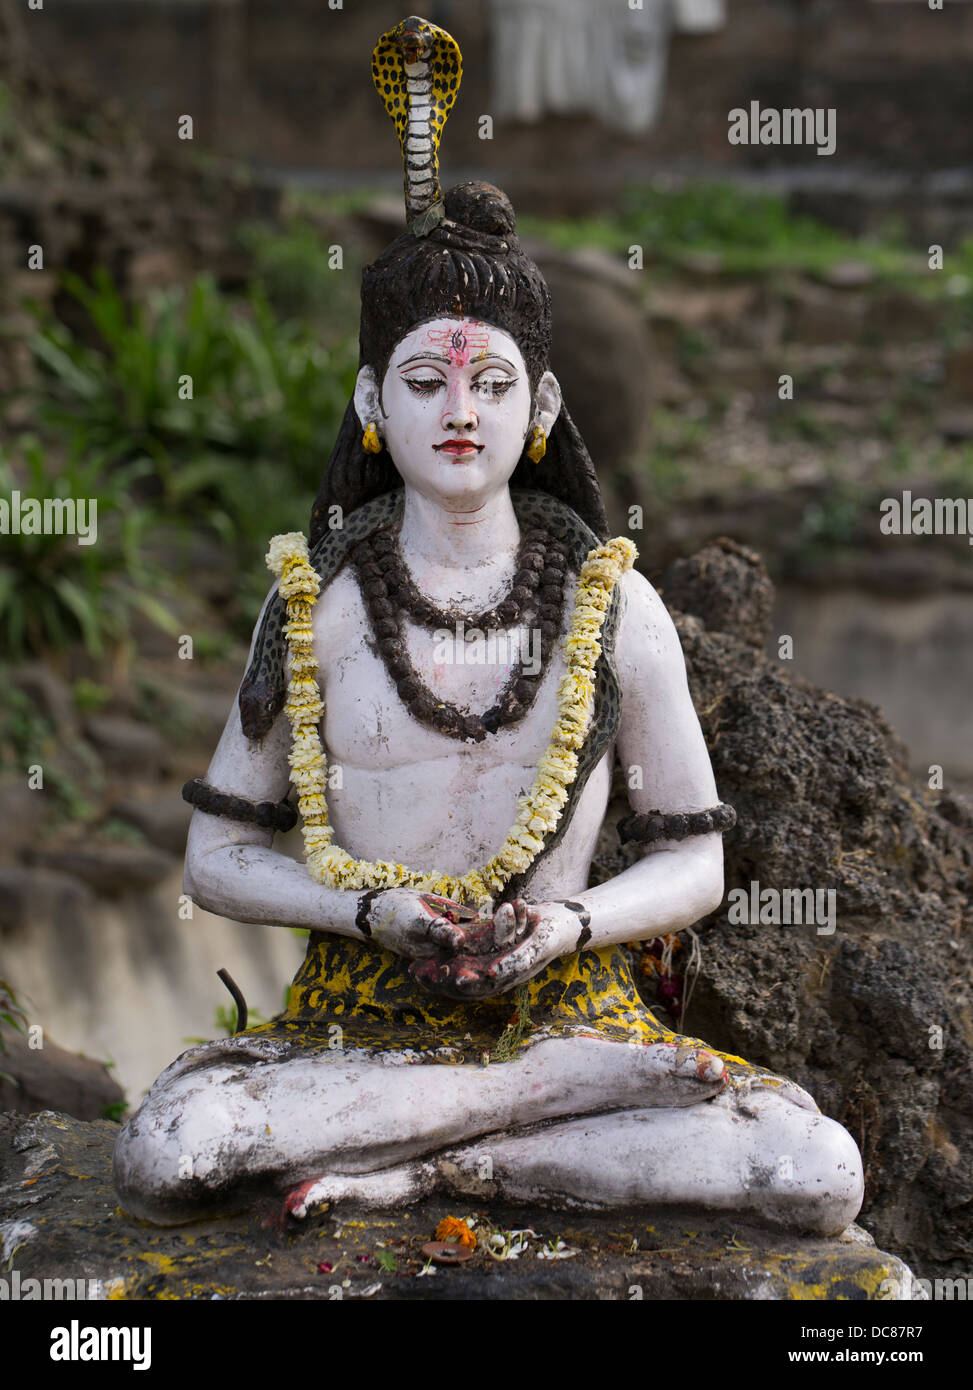 Estatua del Señor Shiva, deidad hindú - La vida en las orillas del río Ganges - Varanasi, India Foto de stock